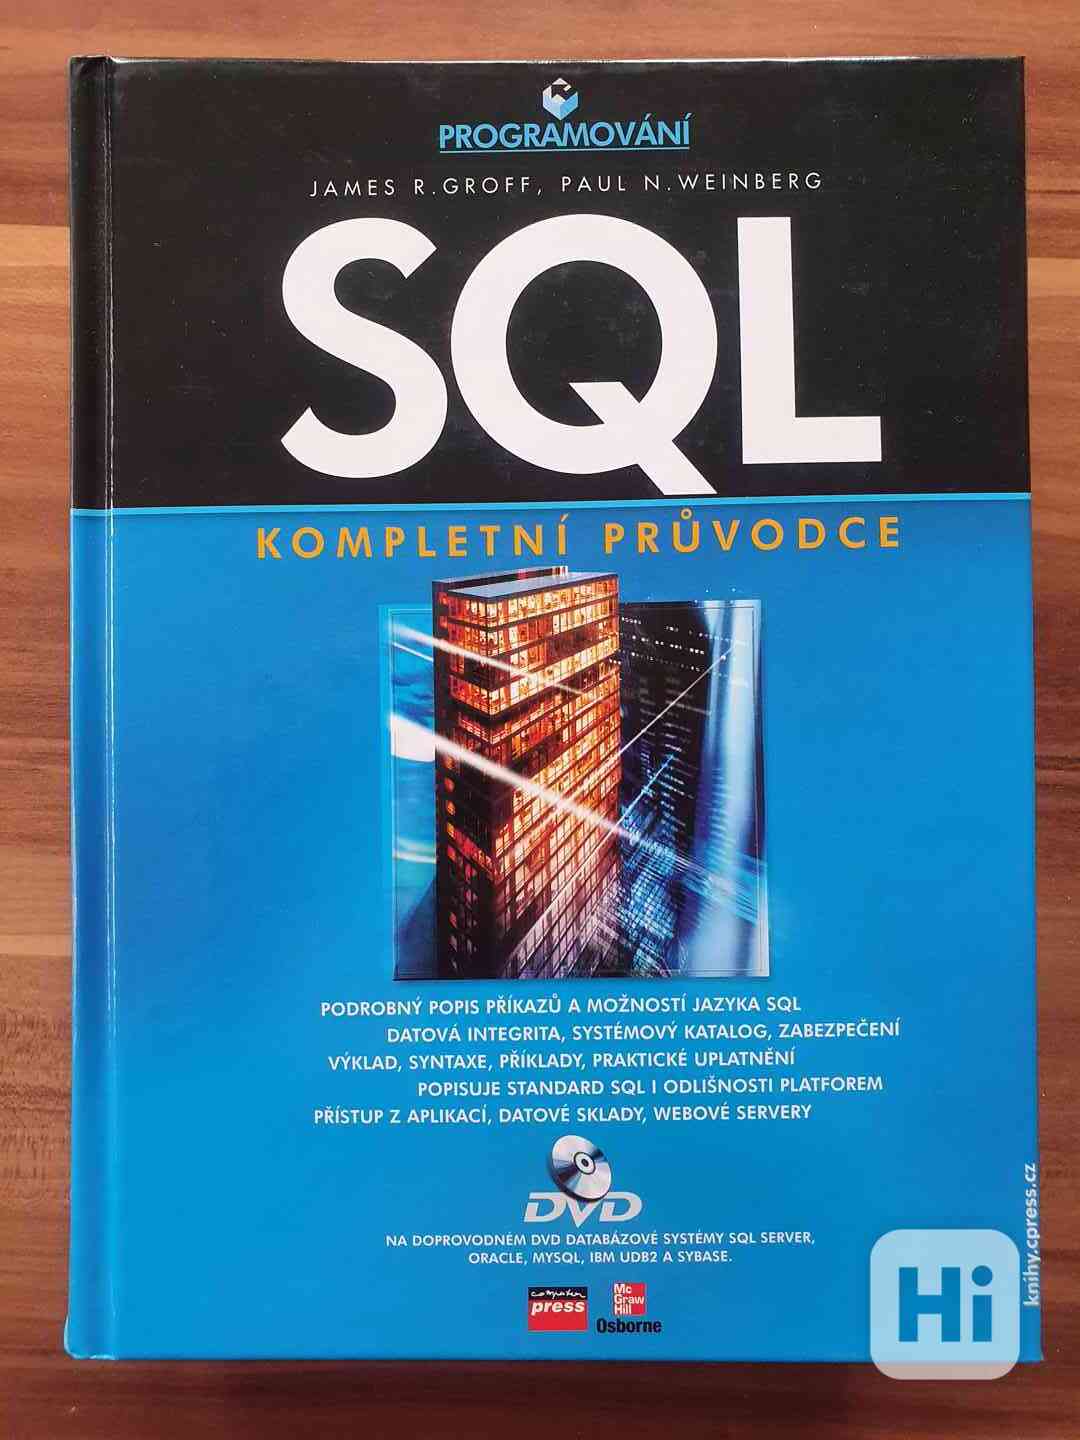 SQL kompletni pruvodce s CD, 900 stran - foto 1